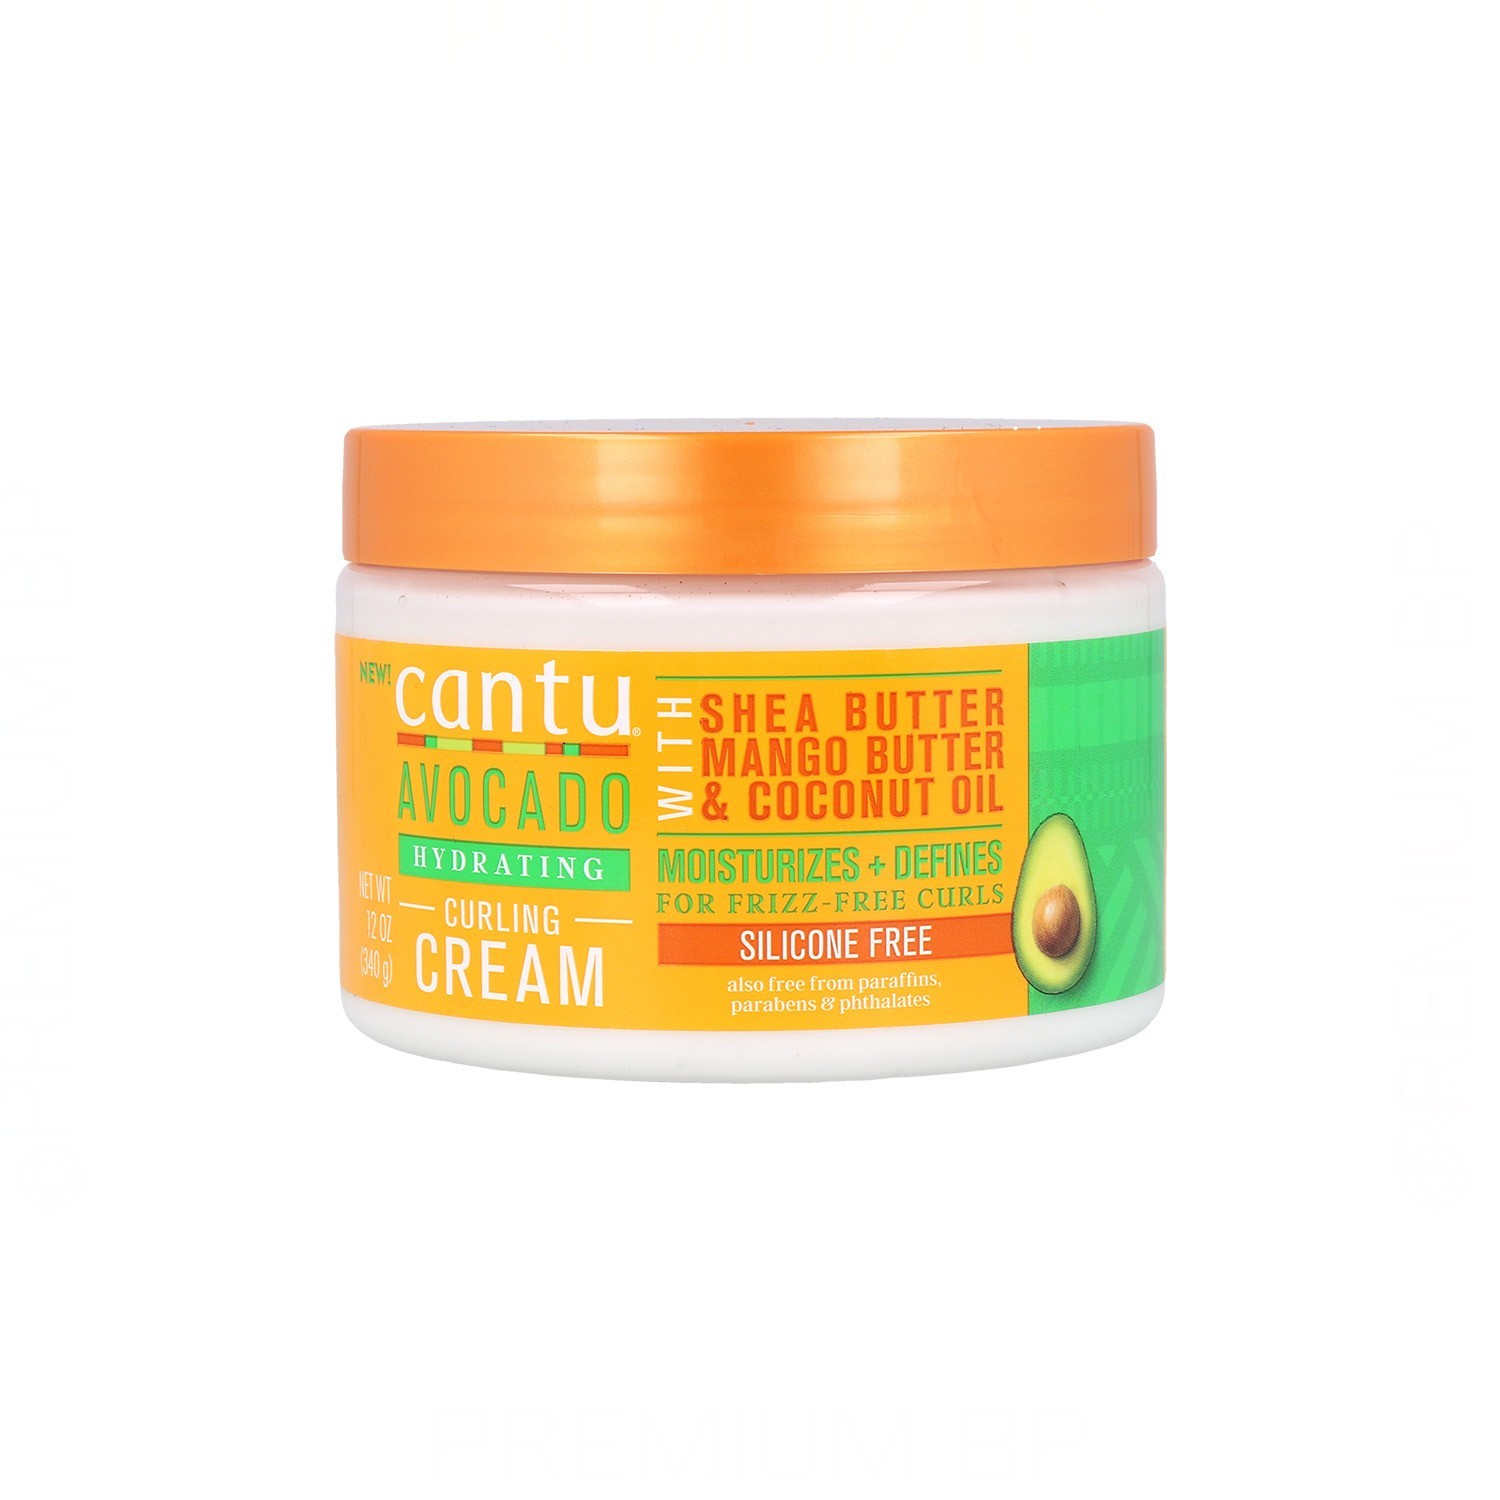 Cantu Avocado Hydrating Curl Cream 12Oz/340G